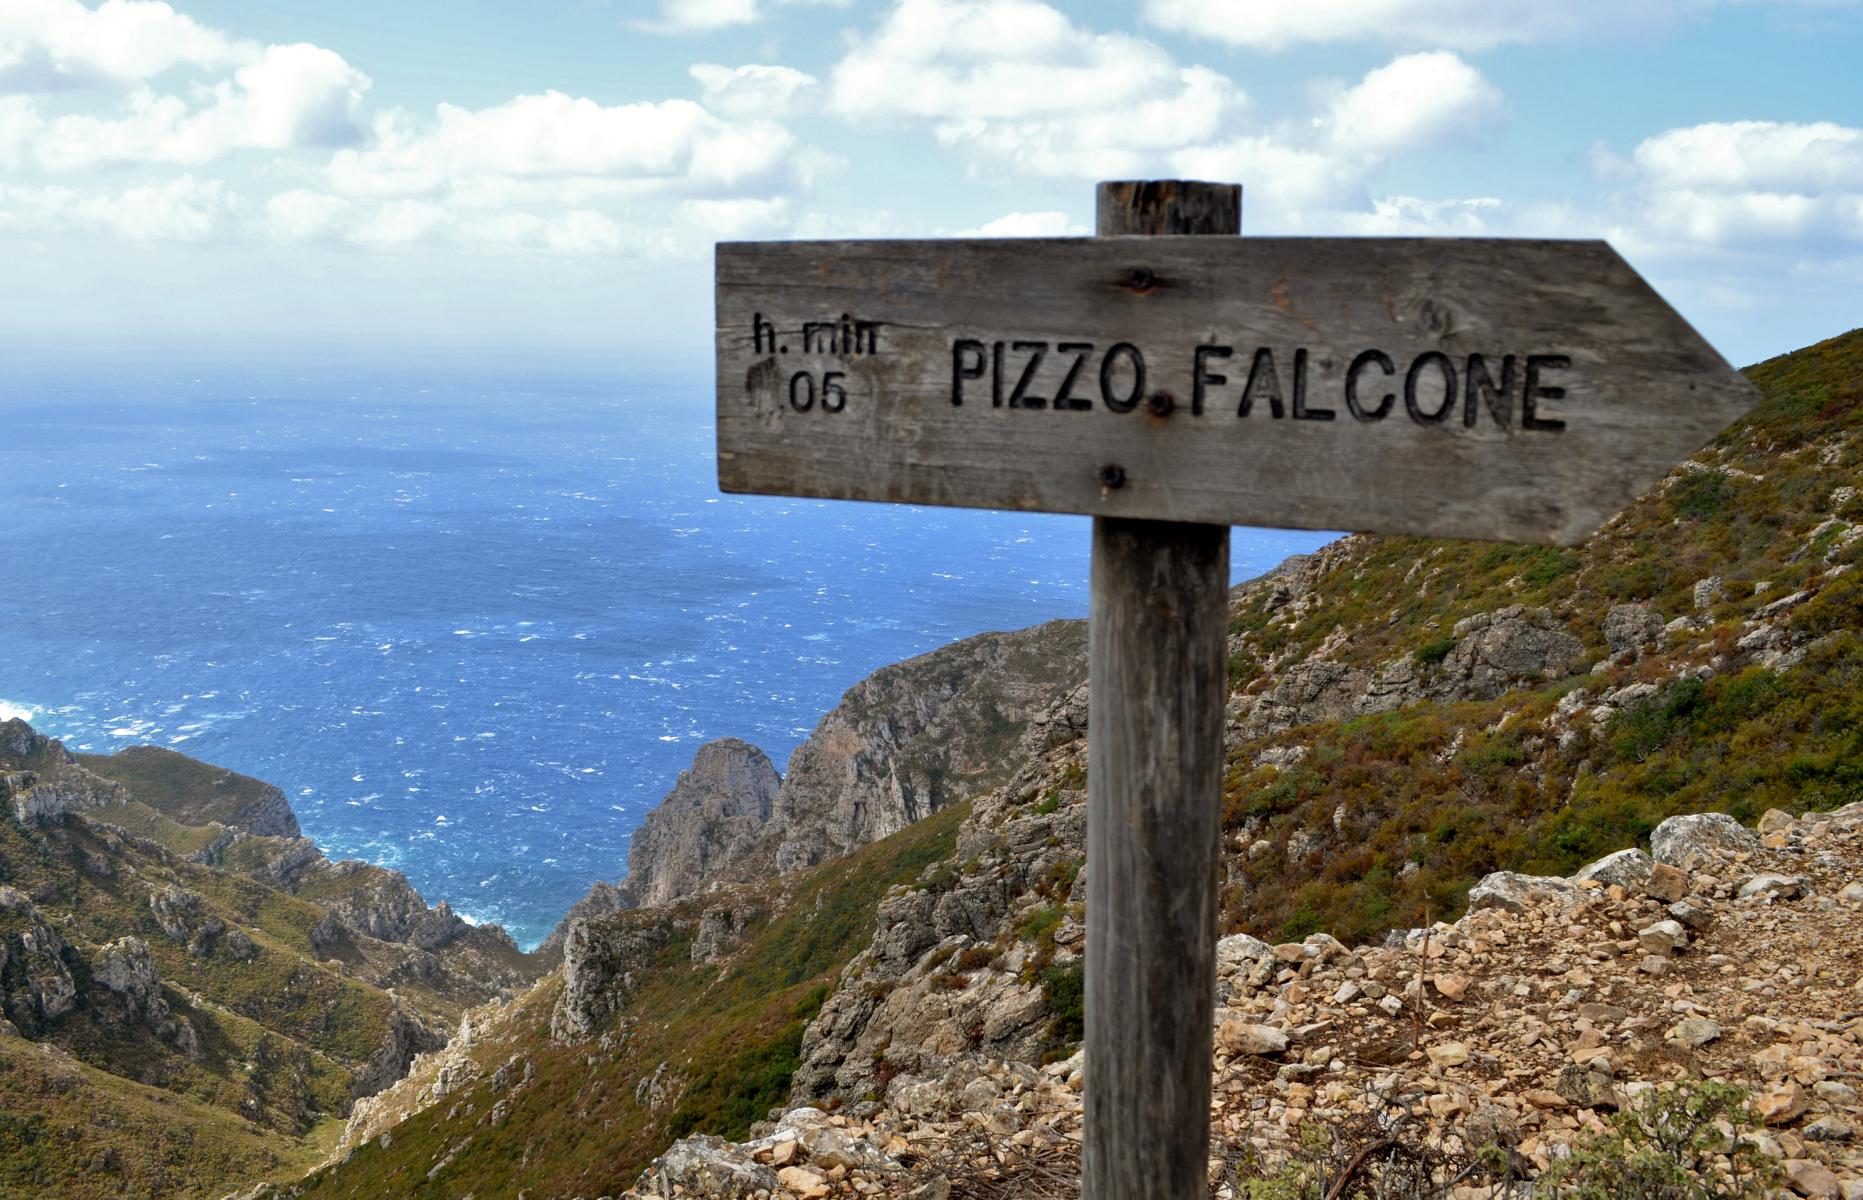 Wanderung zum Pizzo Falcone - Lupe Reisen